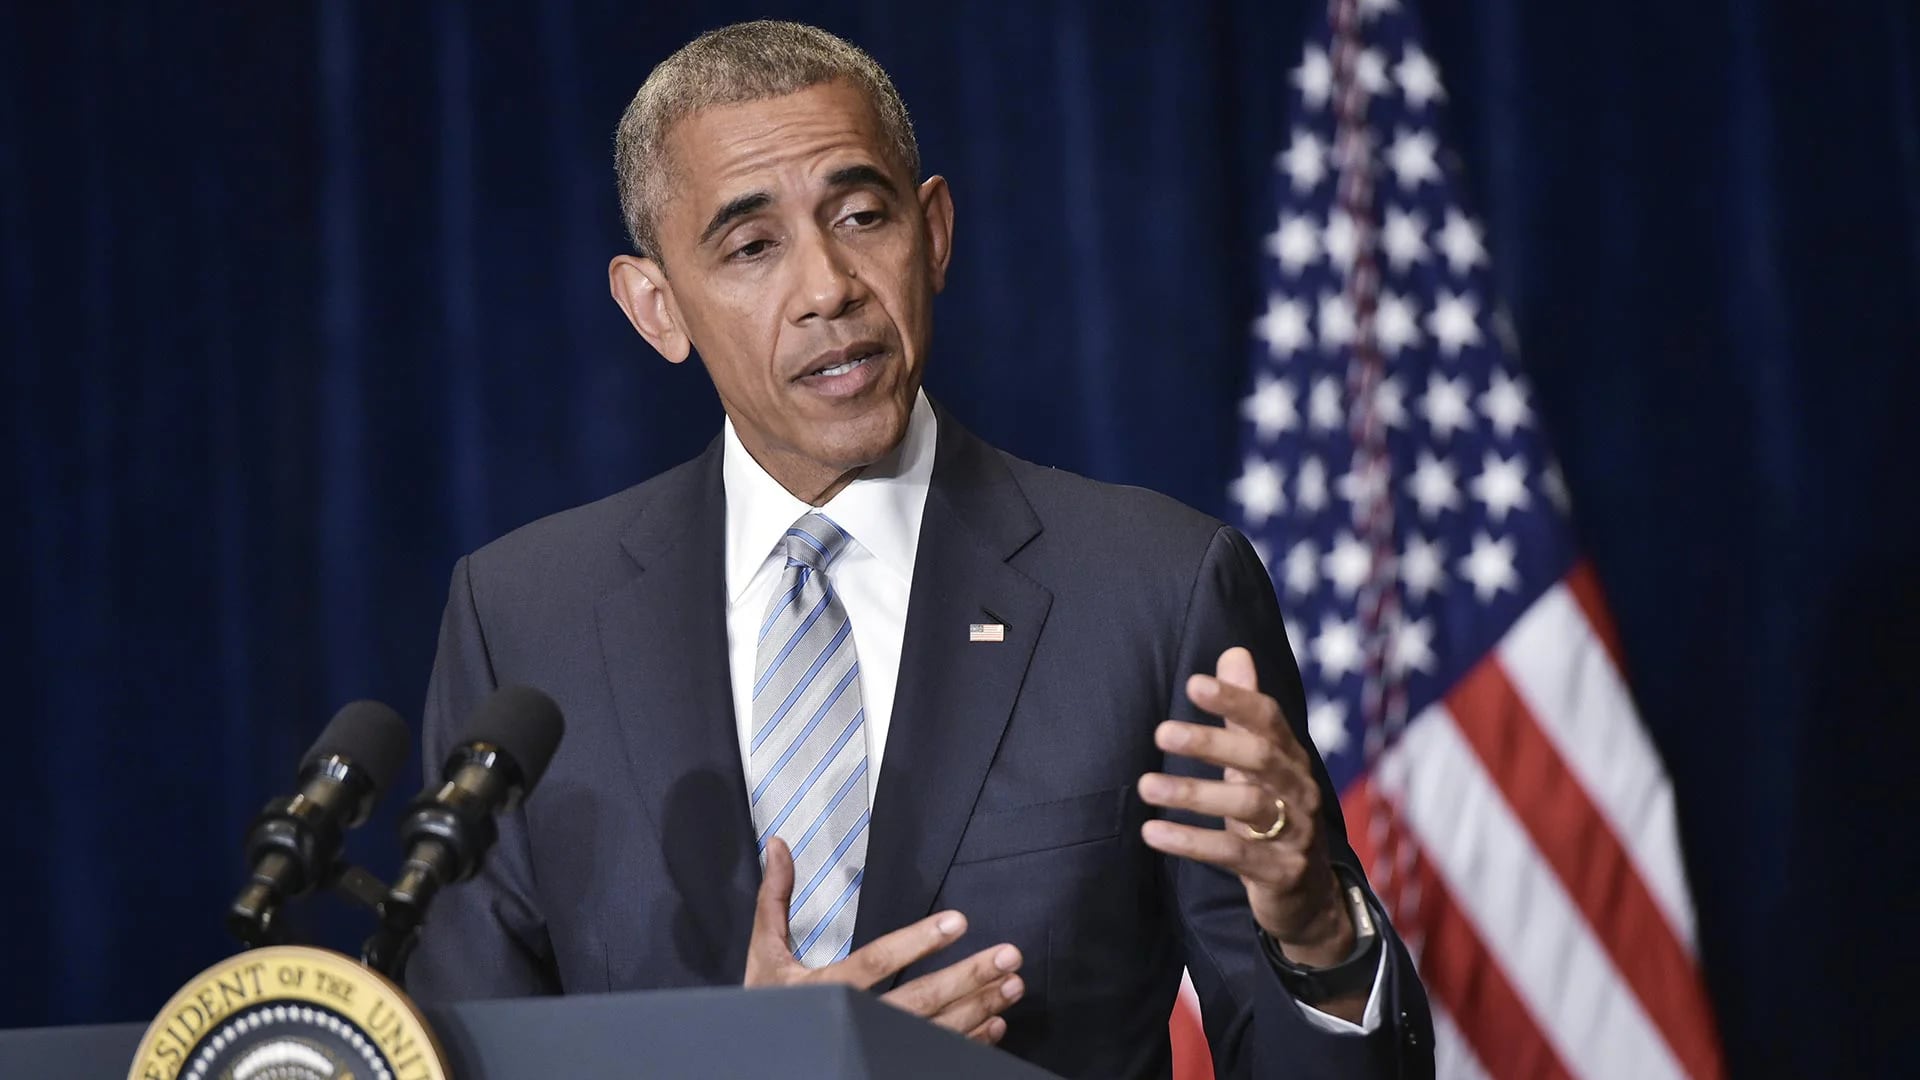 Barack Obama ofreció una conferencia de prensa donde se refirió a la muerte de dos ciudadanos afroamericanos